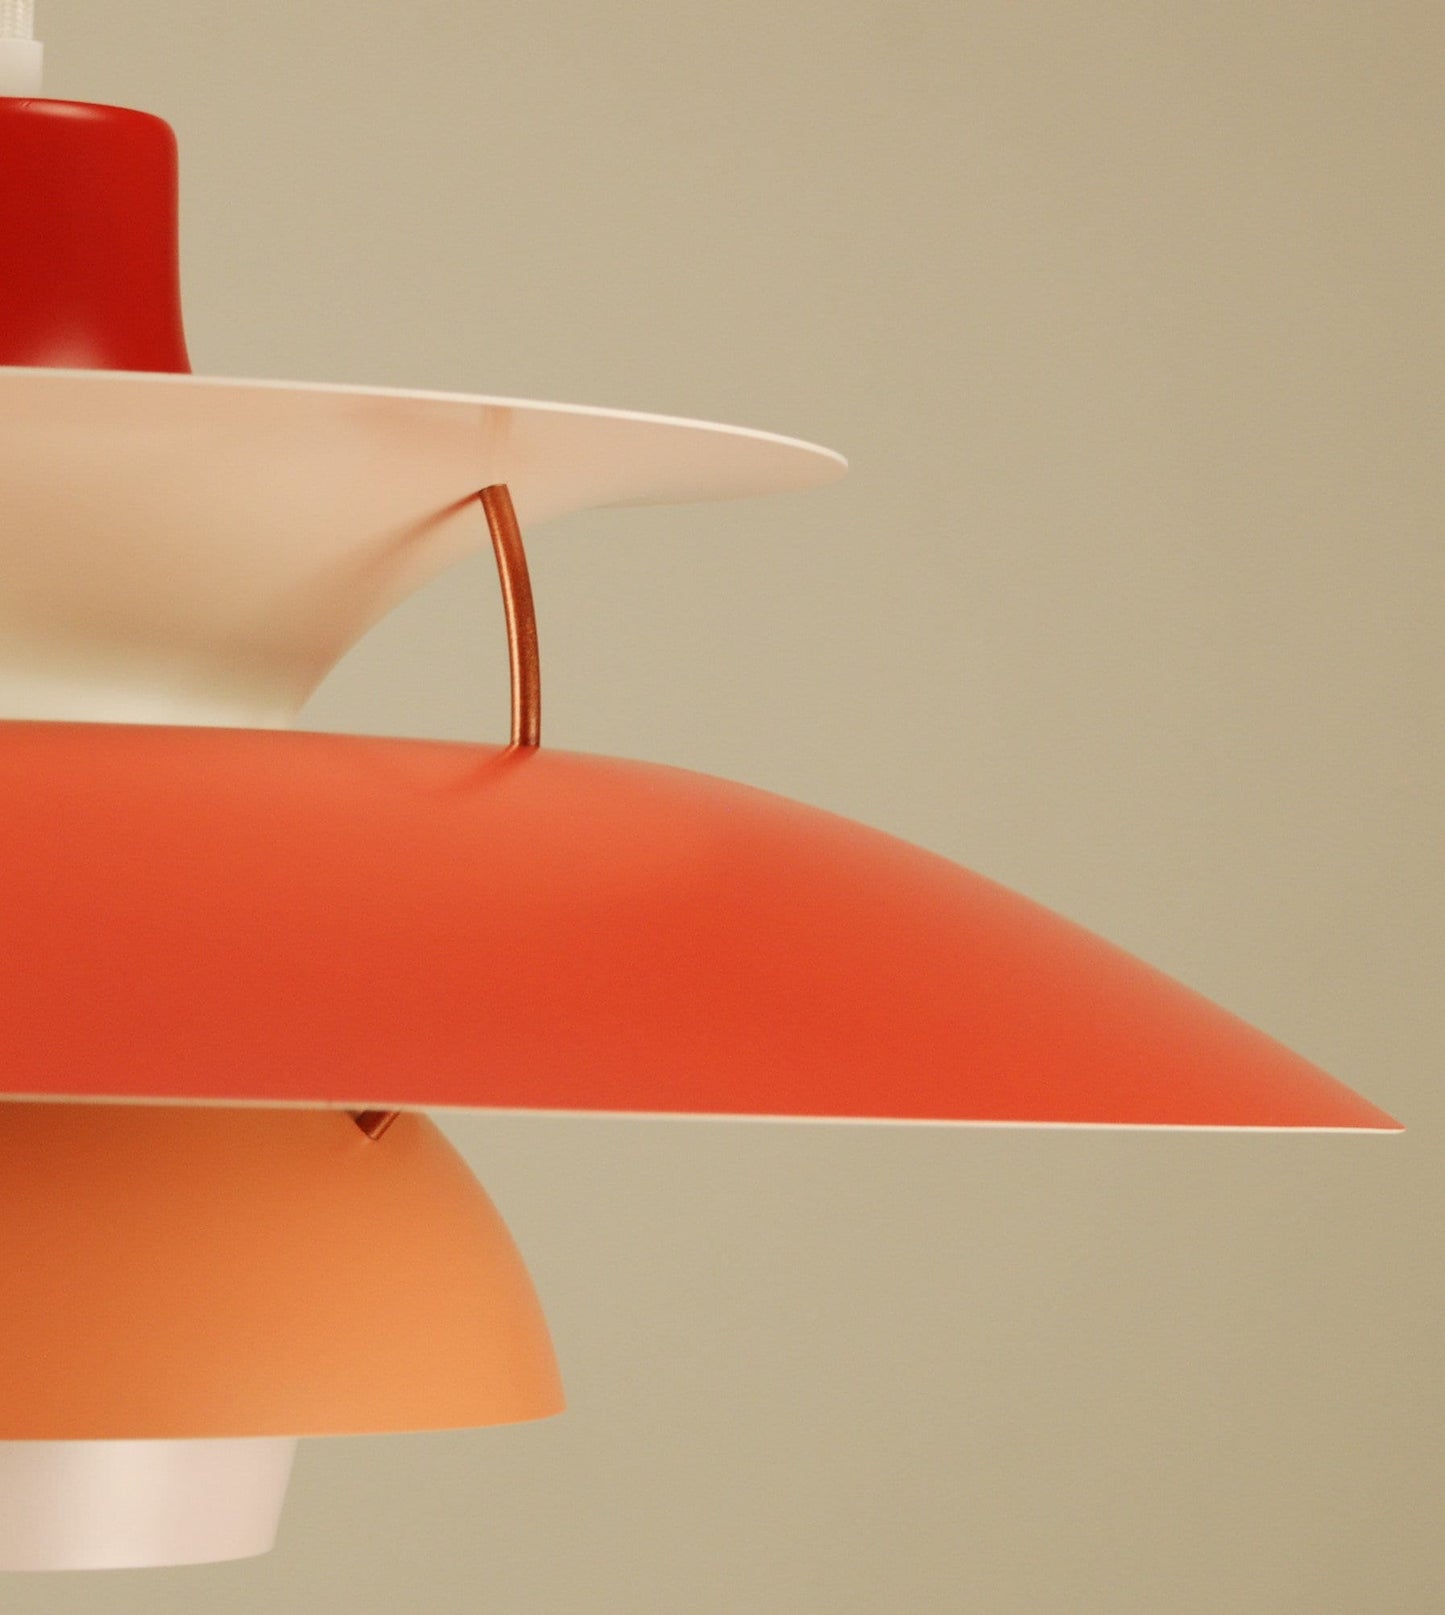 Vintage Louis Poulsen PH5 Pendant Lamp | Original Vintage Restored in 'Red/Orange/Light Pink' or choose your custom color! - FancyVintage.nl -